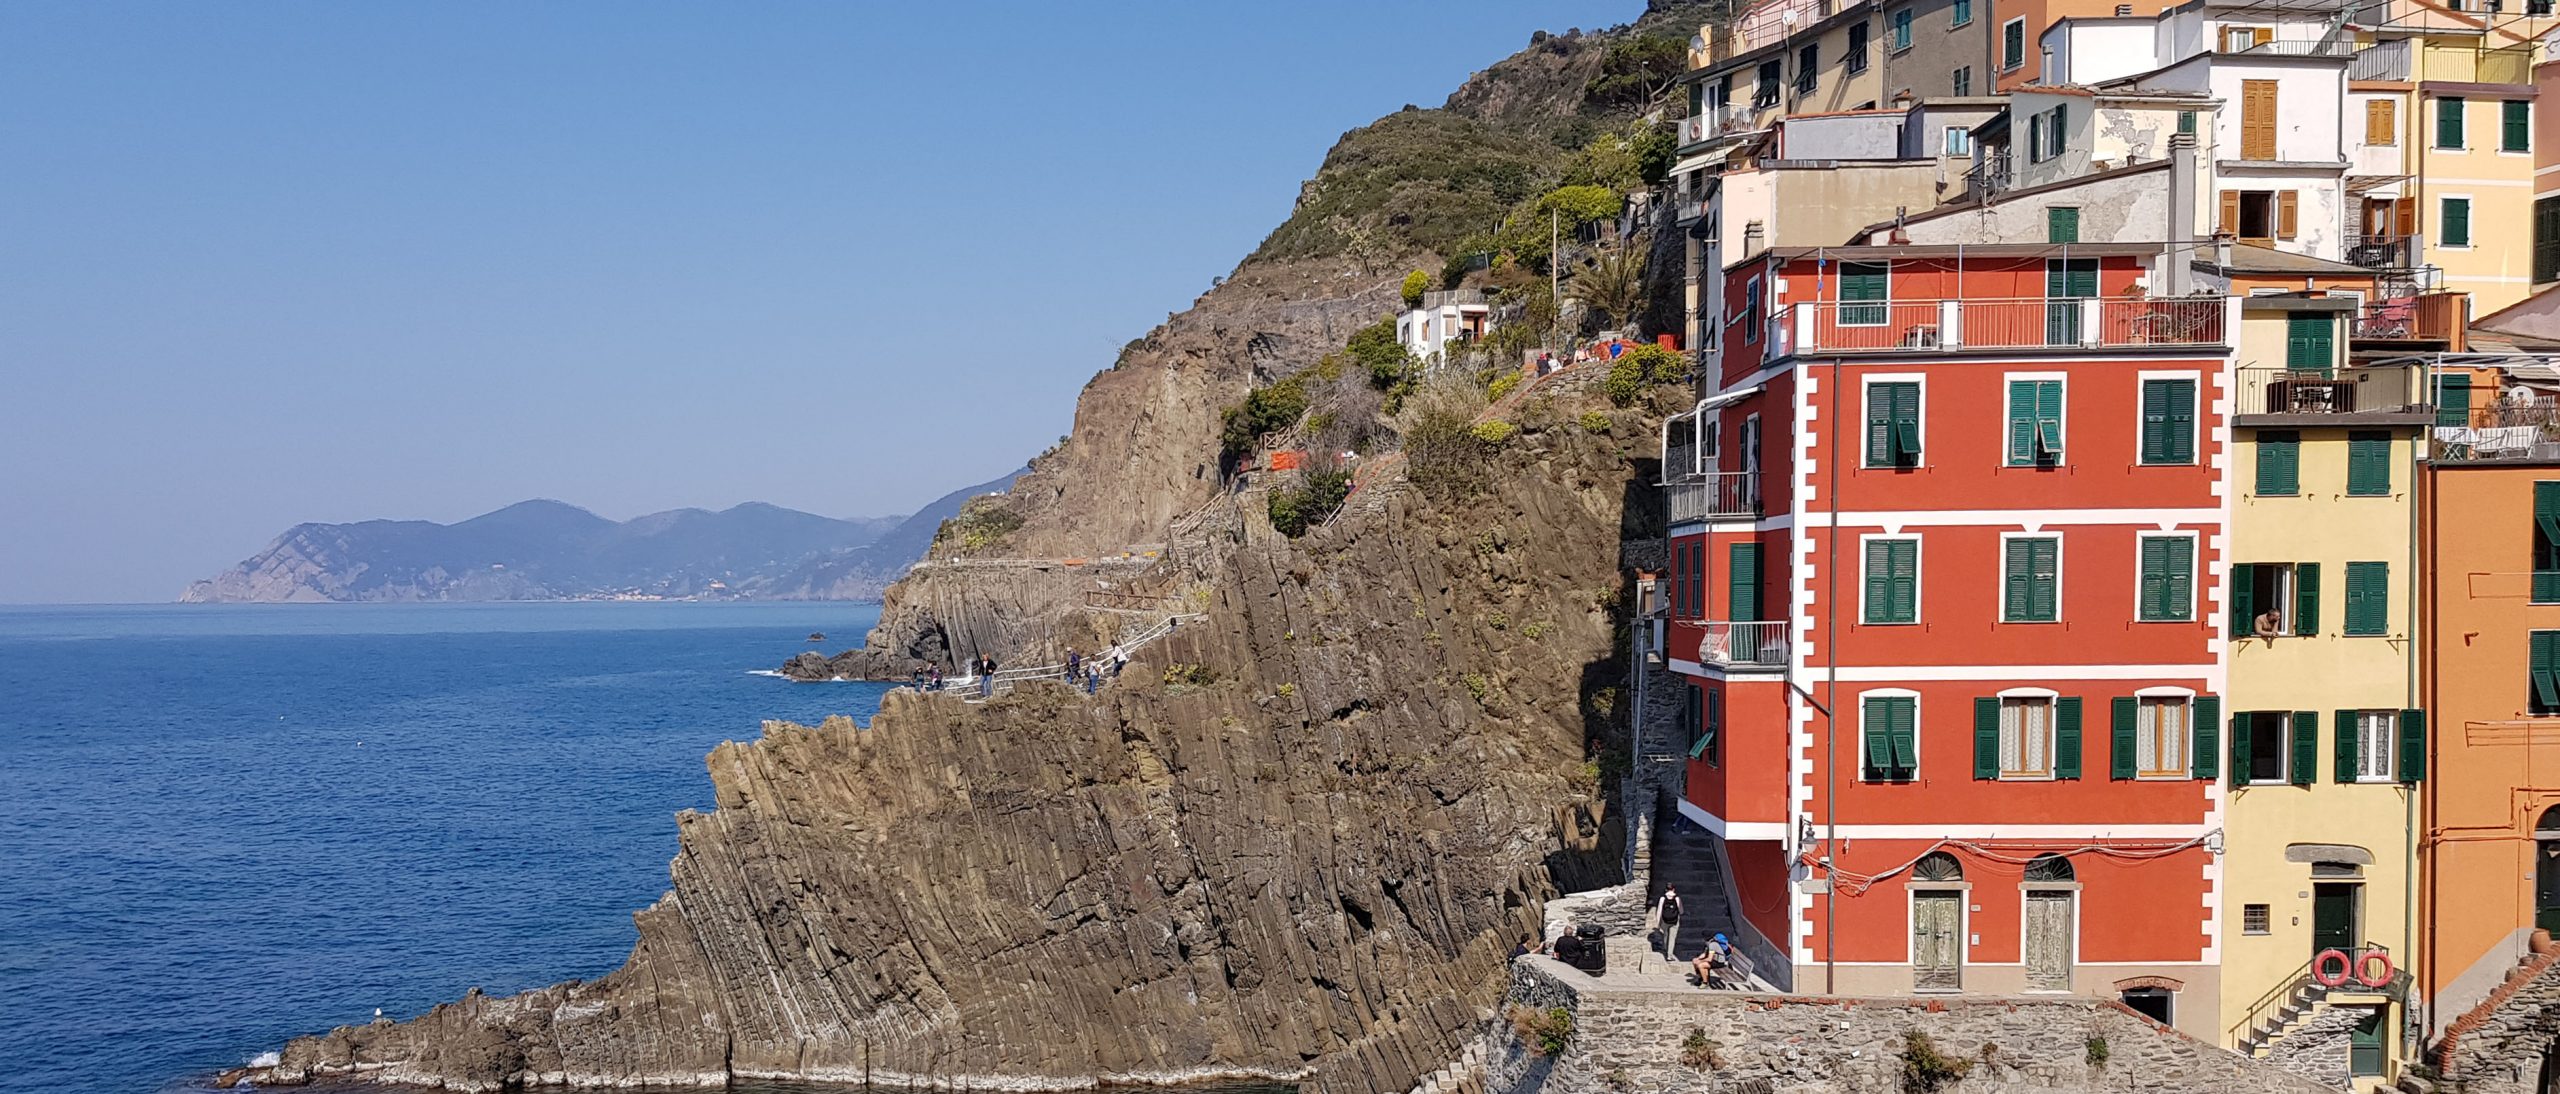 Workation Beitrag: Blick auf Meer und farbenfrohe italienische Kleinstadt